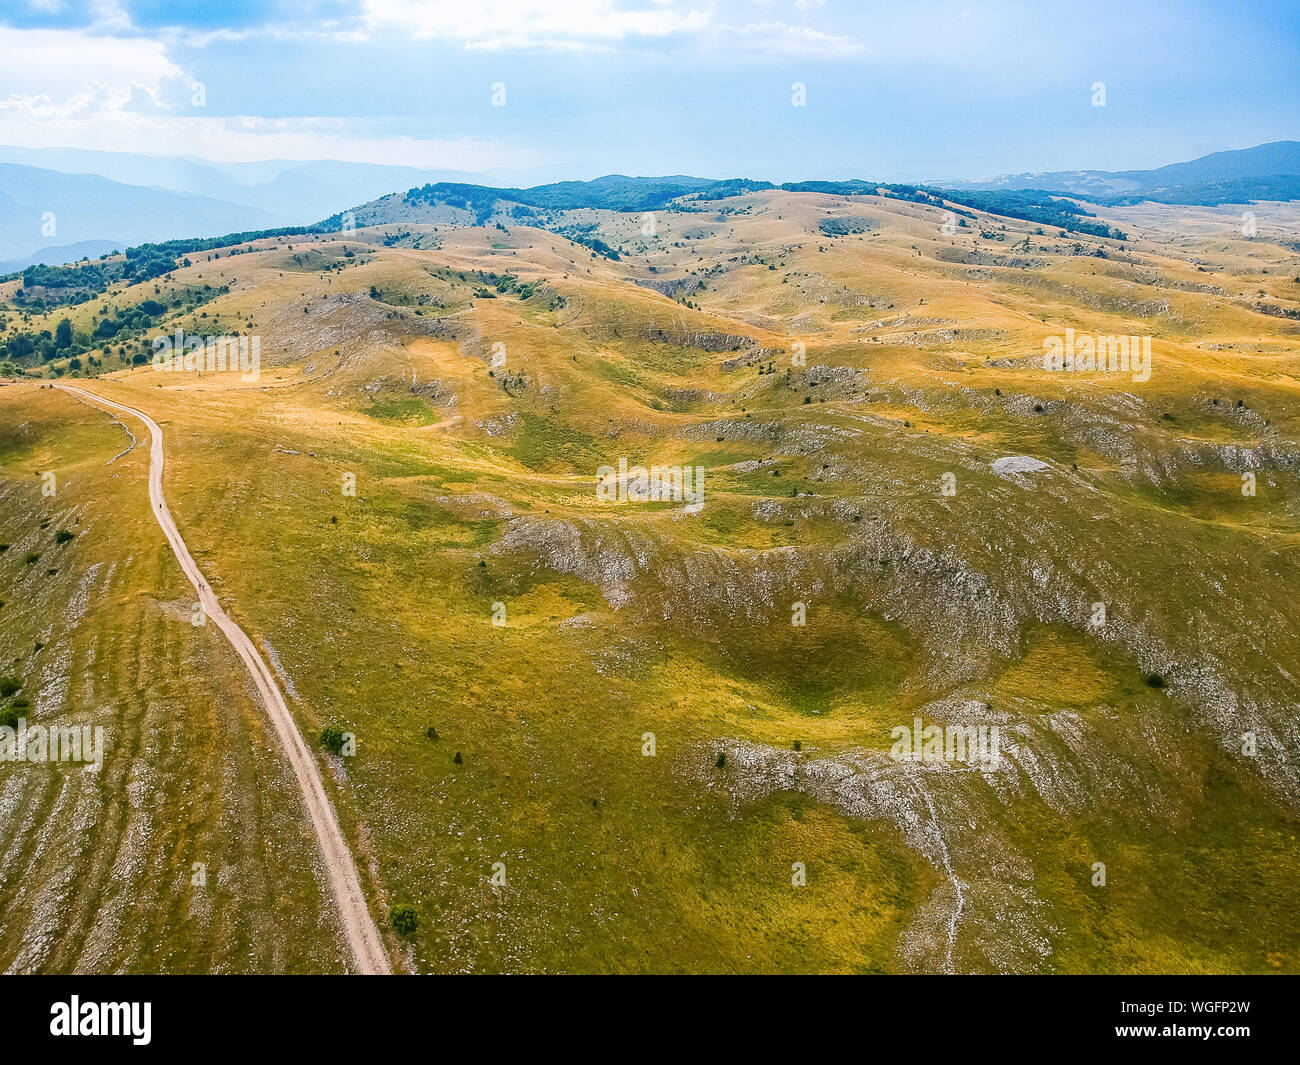 Vue aérienne de la nature autour de Vrdolje village sur la route de Lukomir en Bosnie et Herzégovine Banque D'Images